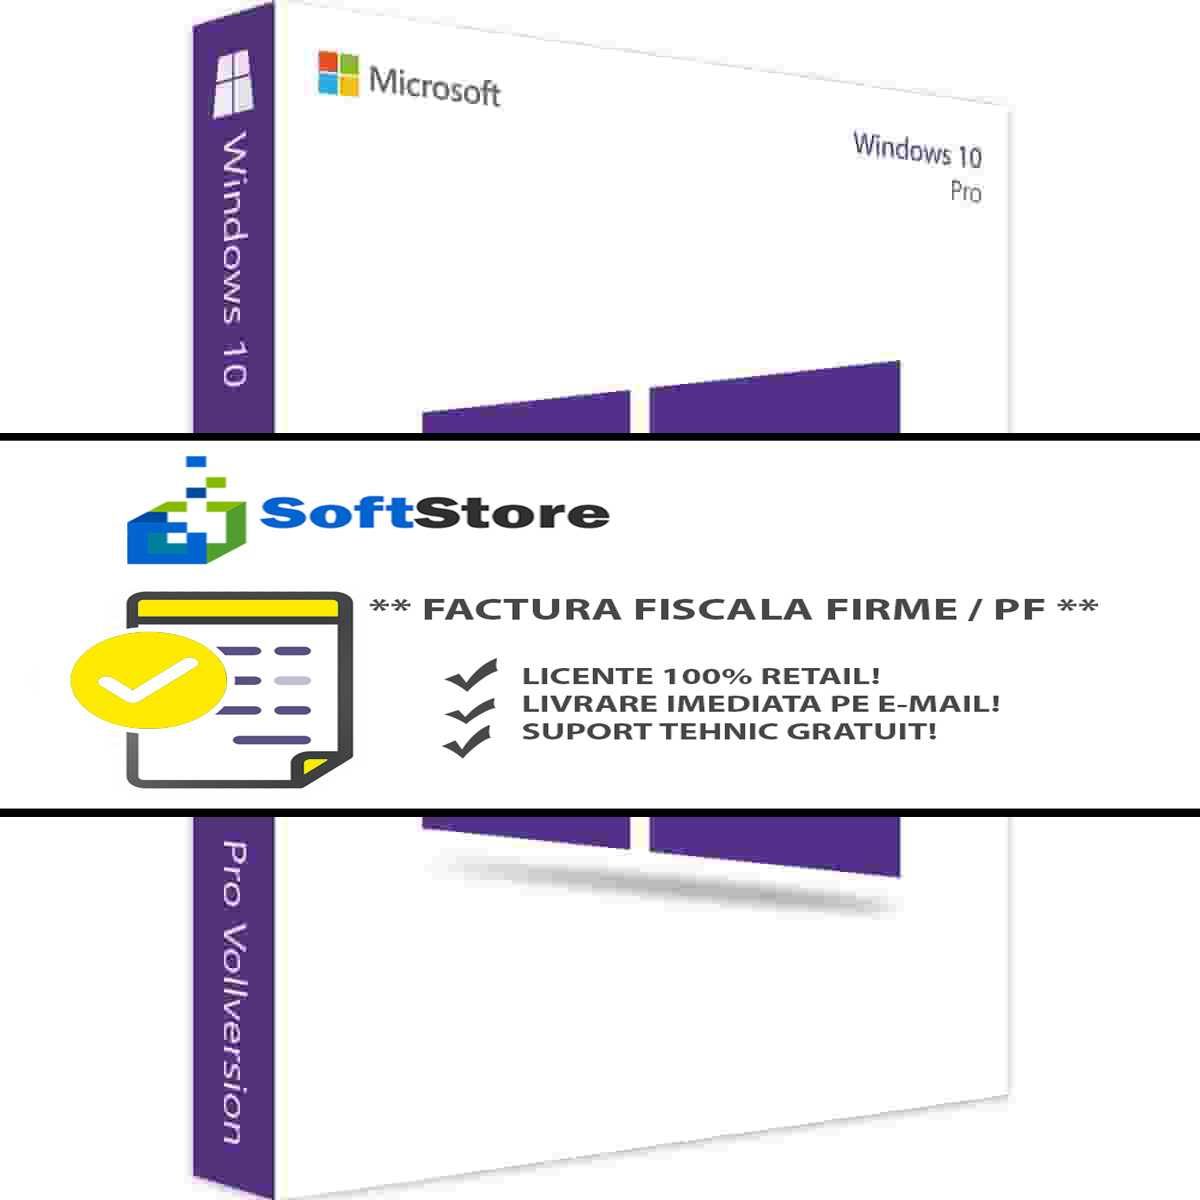 LICENTE: Windows 10 Pro / Home - 100% RETAIL, Factura fiscala!